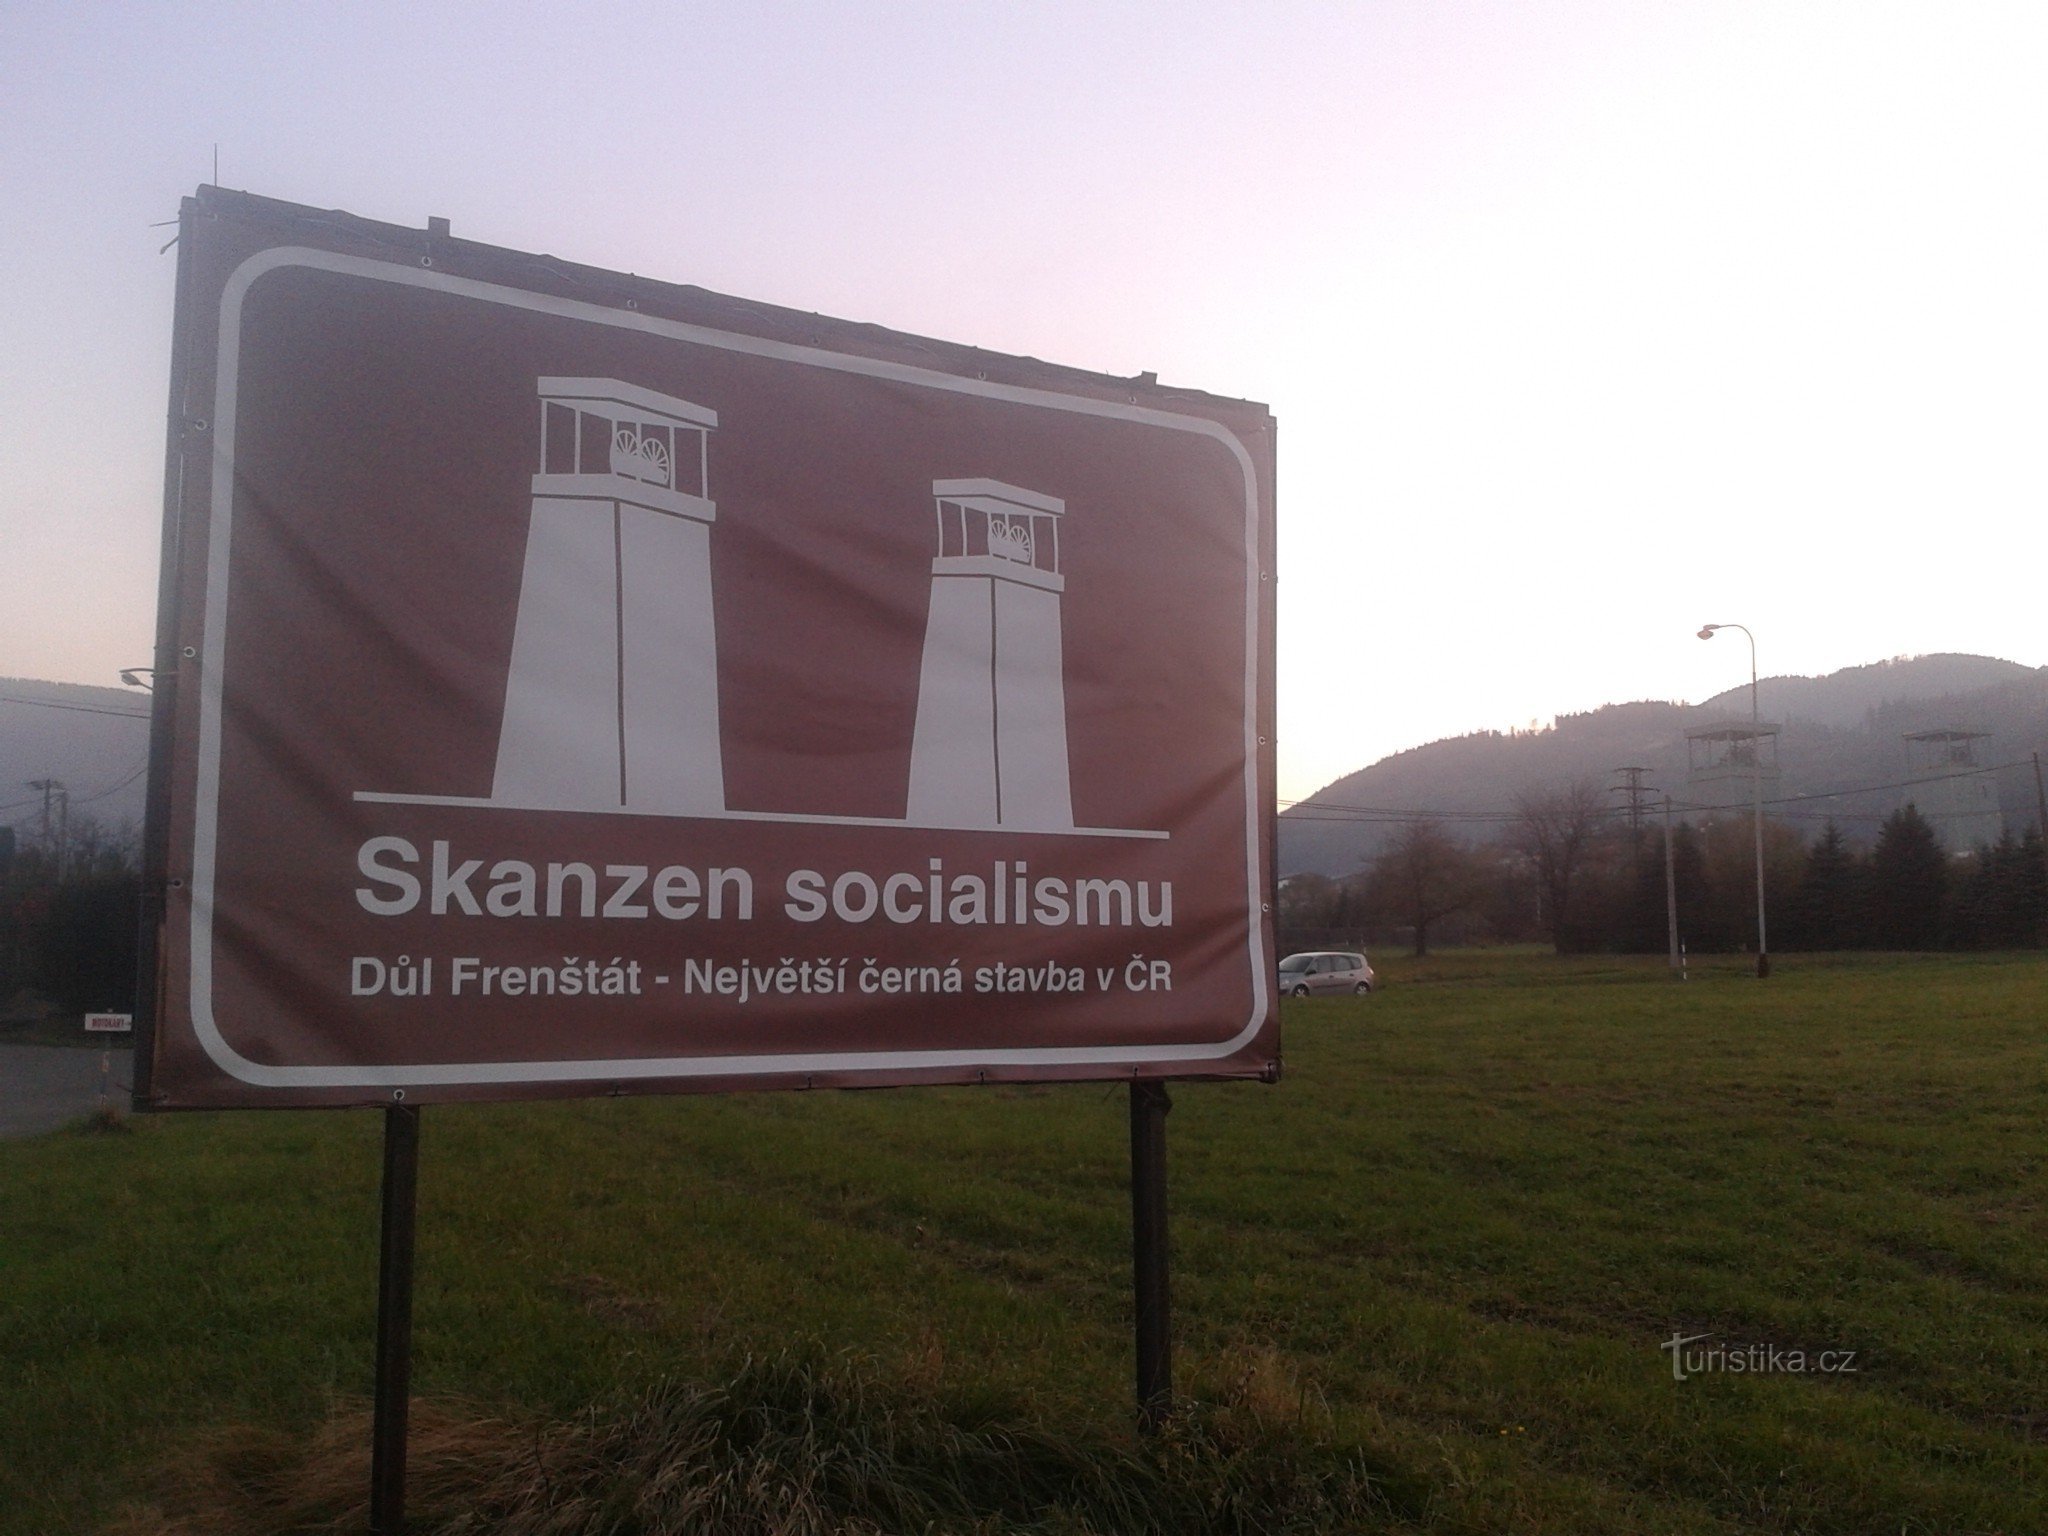 Bảo tàng ngoài trời xã hội chủ nghĩa lớn nhất ở Cộng hòa Séc